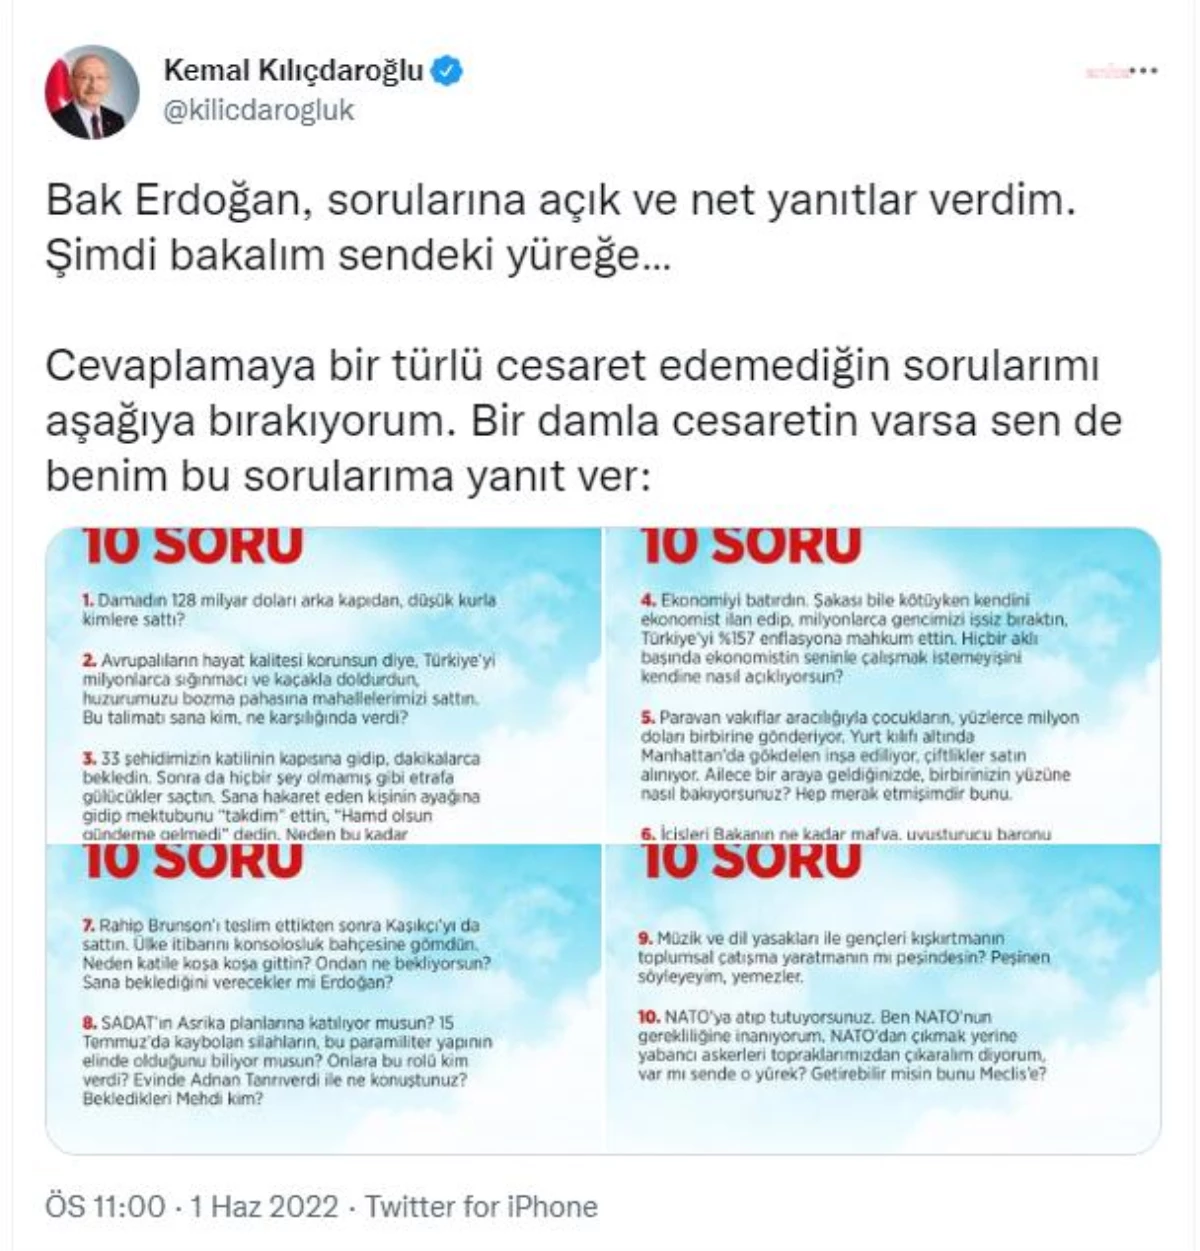 Kılıçdaroğlu\'ndan Erdoğan\'a 10 Soru: "Cevaplamaya Bir Türlü Cesaret Edemediğin Sorularımı Aşağıya Bırakıyorum.